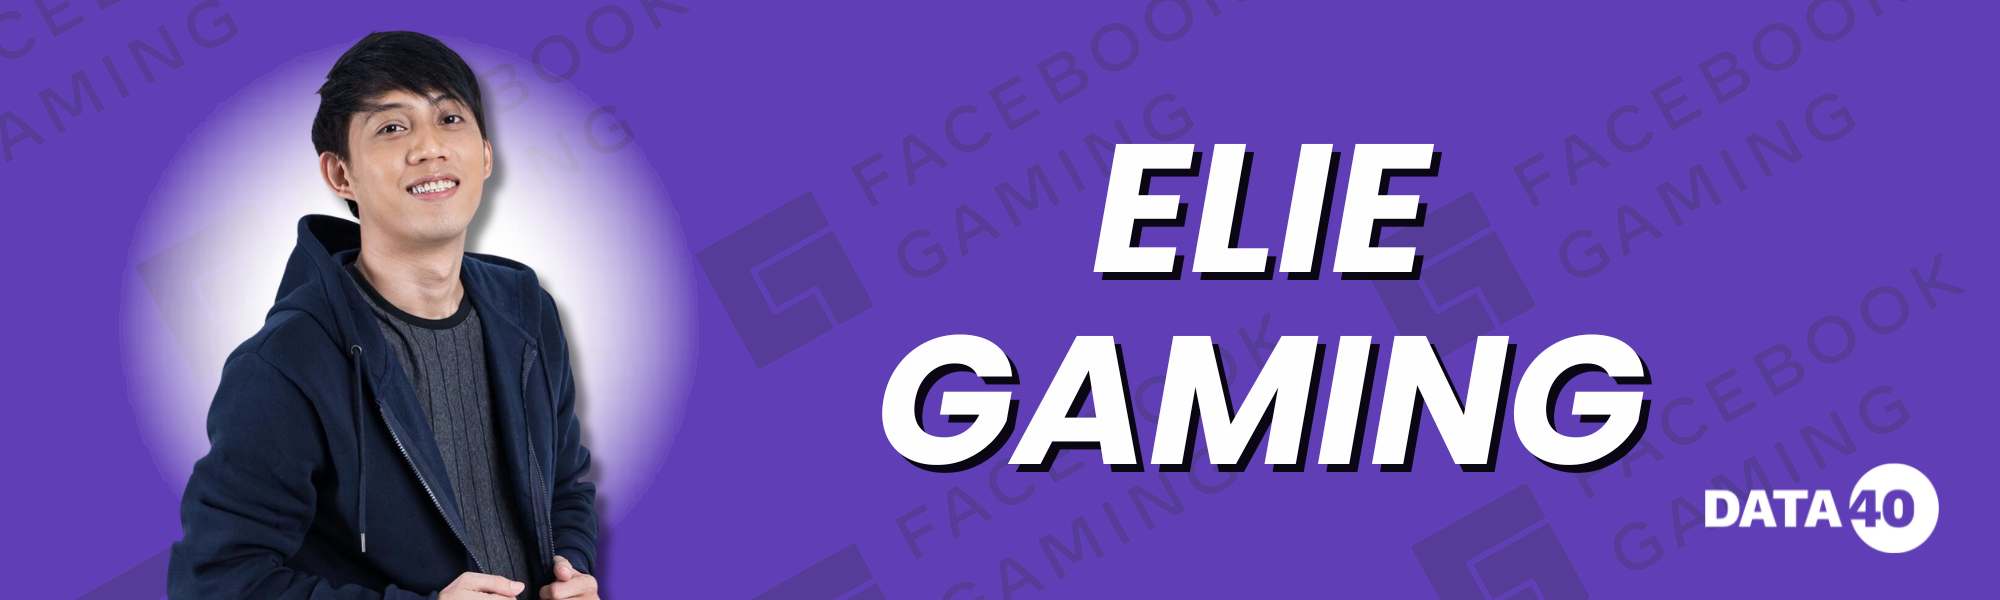 Elie Gaming